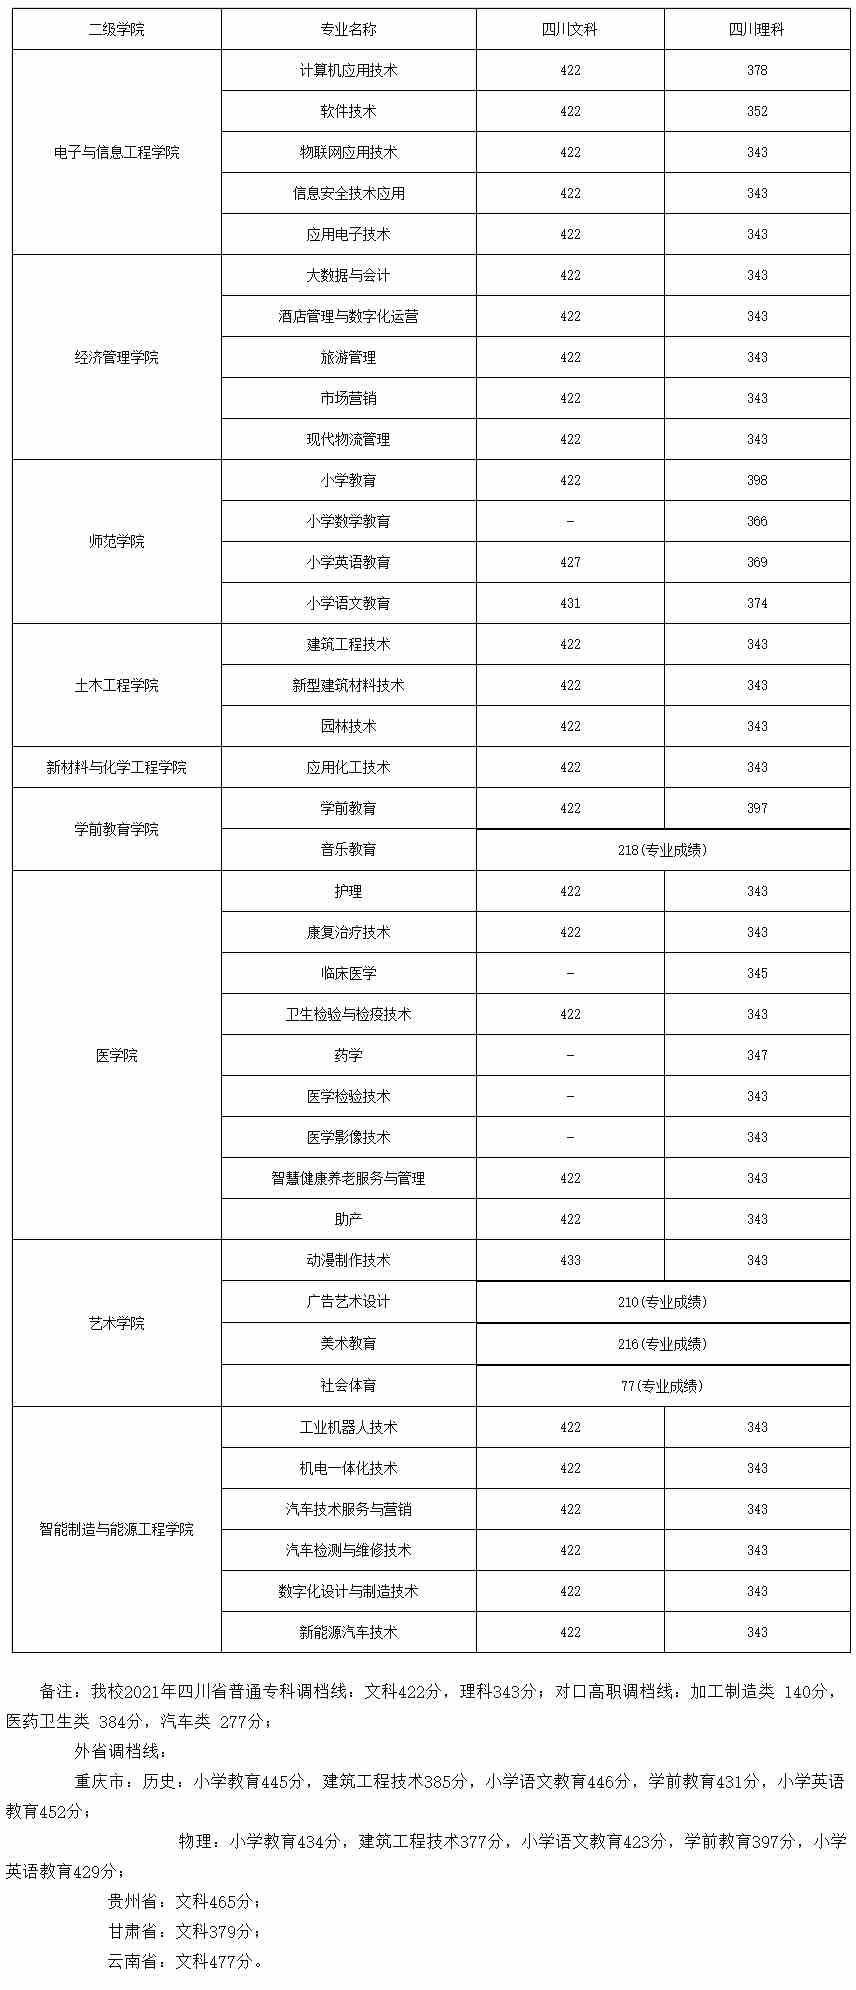 广安职业技术学院2021年录取分数线.jpg